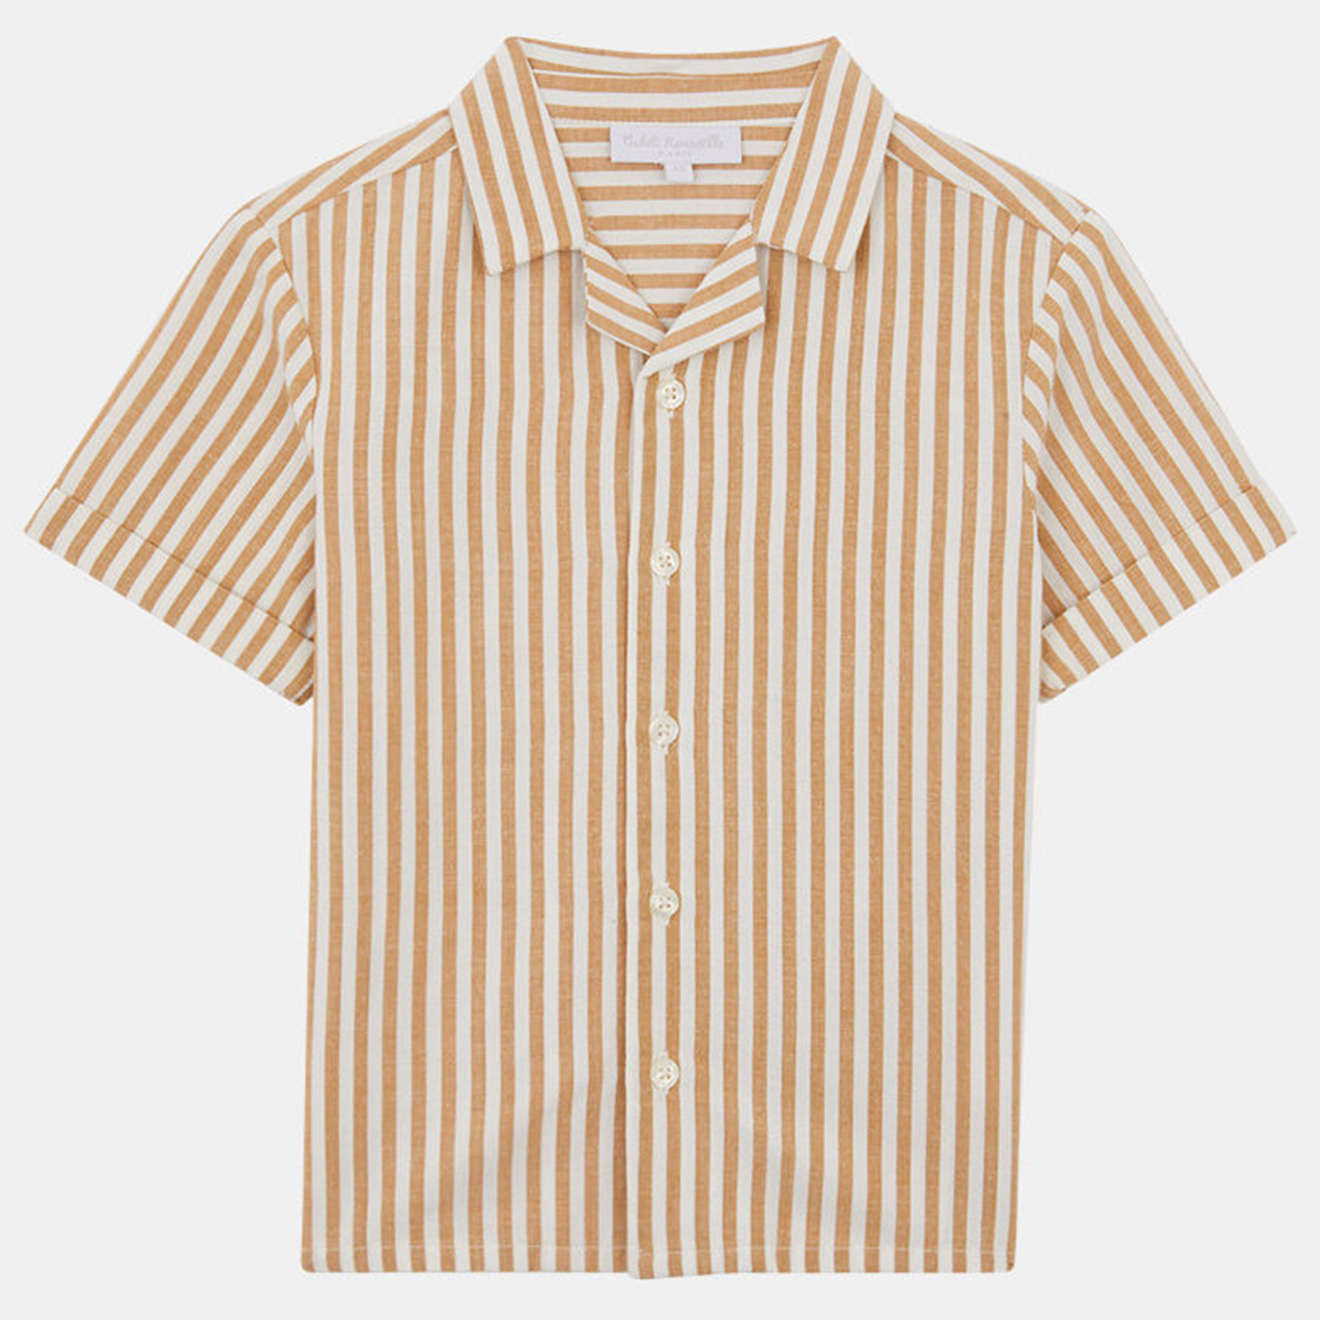 cadet rousselle - chemise volmo en coton et lin mélangés rayée blanc/orange